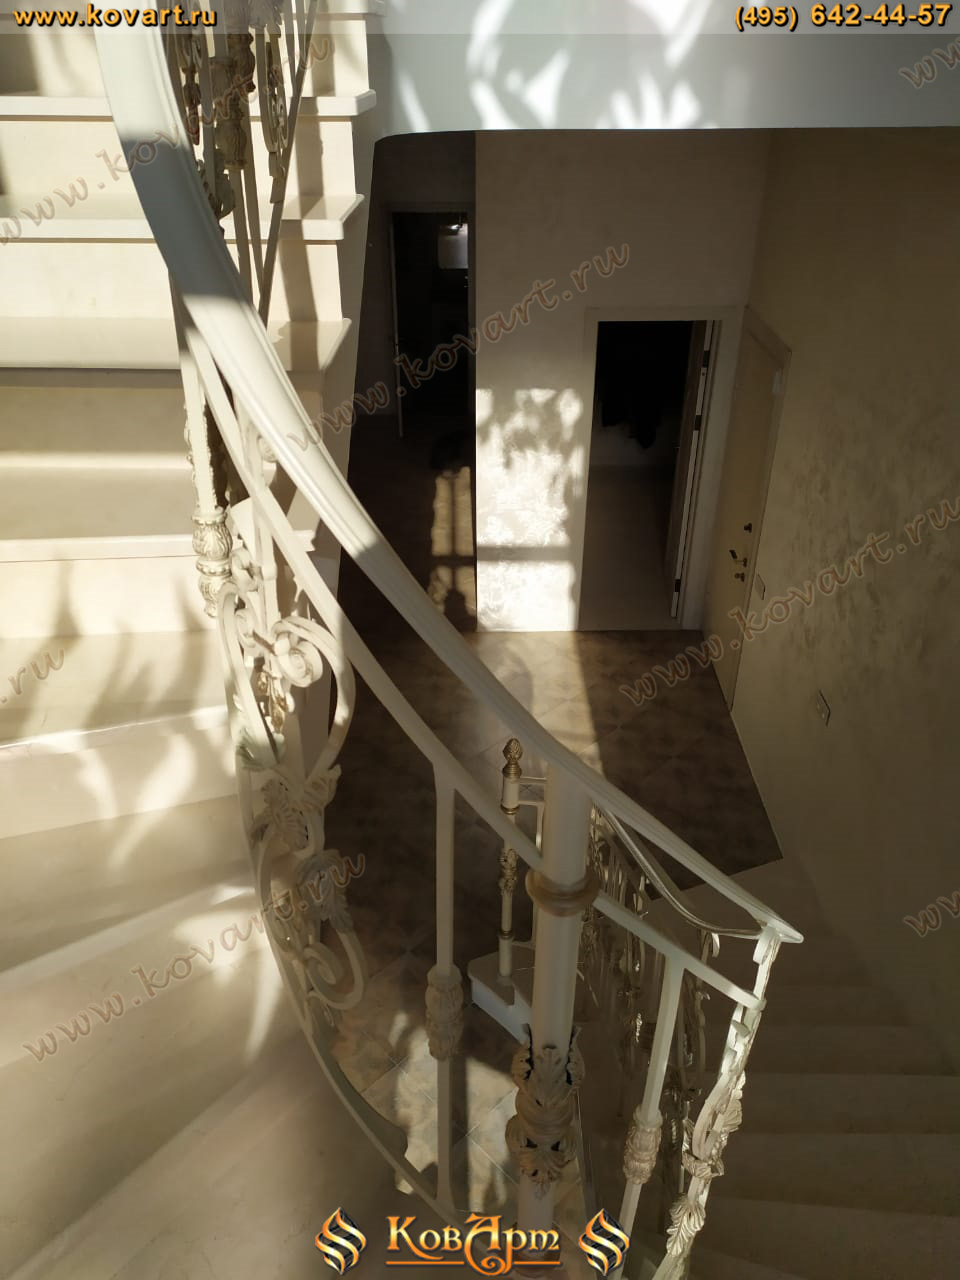 Винтовая лестница с коваными перилами белого цвета Код: КЛ-69/69